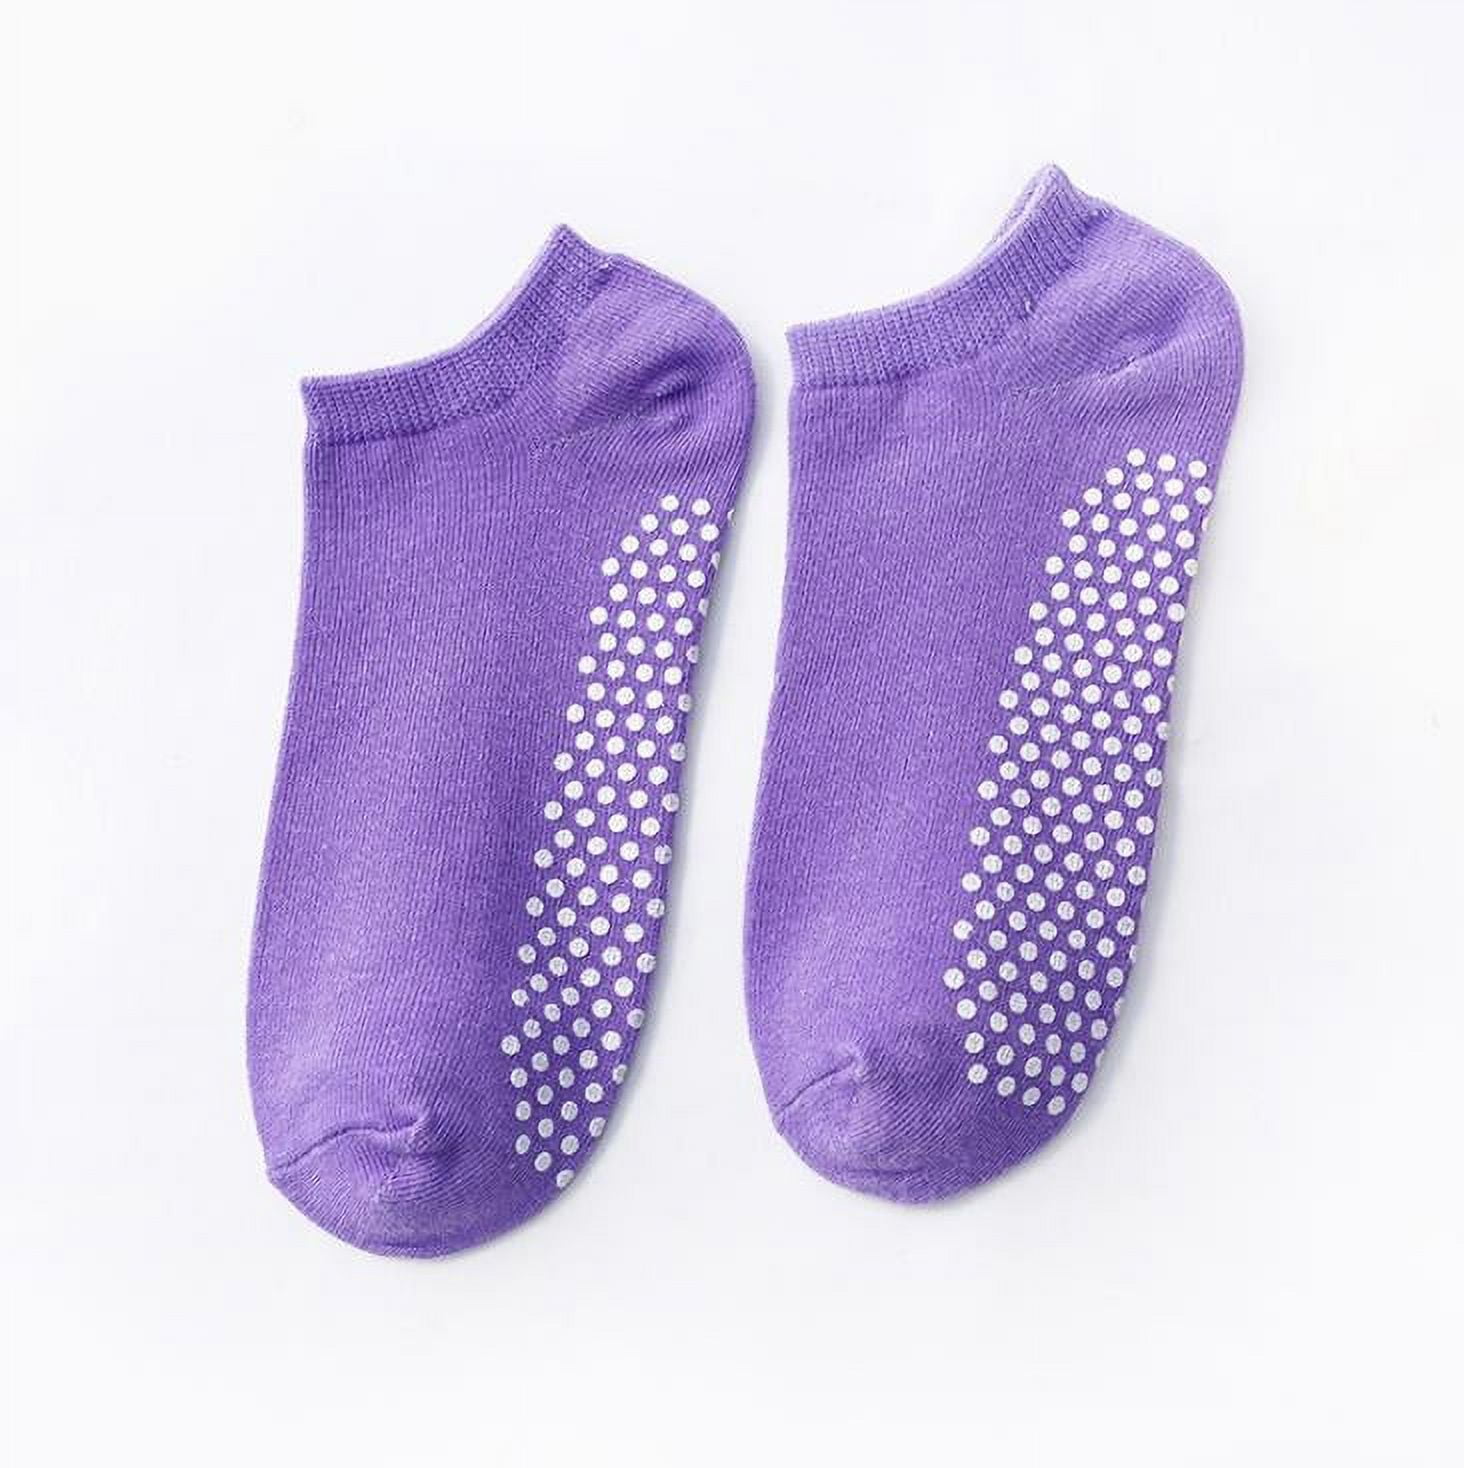 Women's Breathable Pilates Socks Fitness Sports Non slip Backless Yoga  Socks Pilates Perfect for Barefoot Training in Ballet Dance[pink]